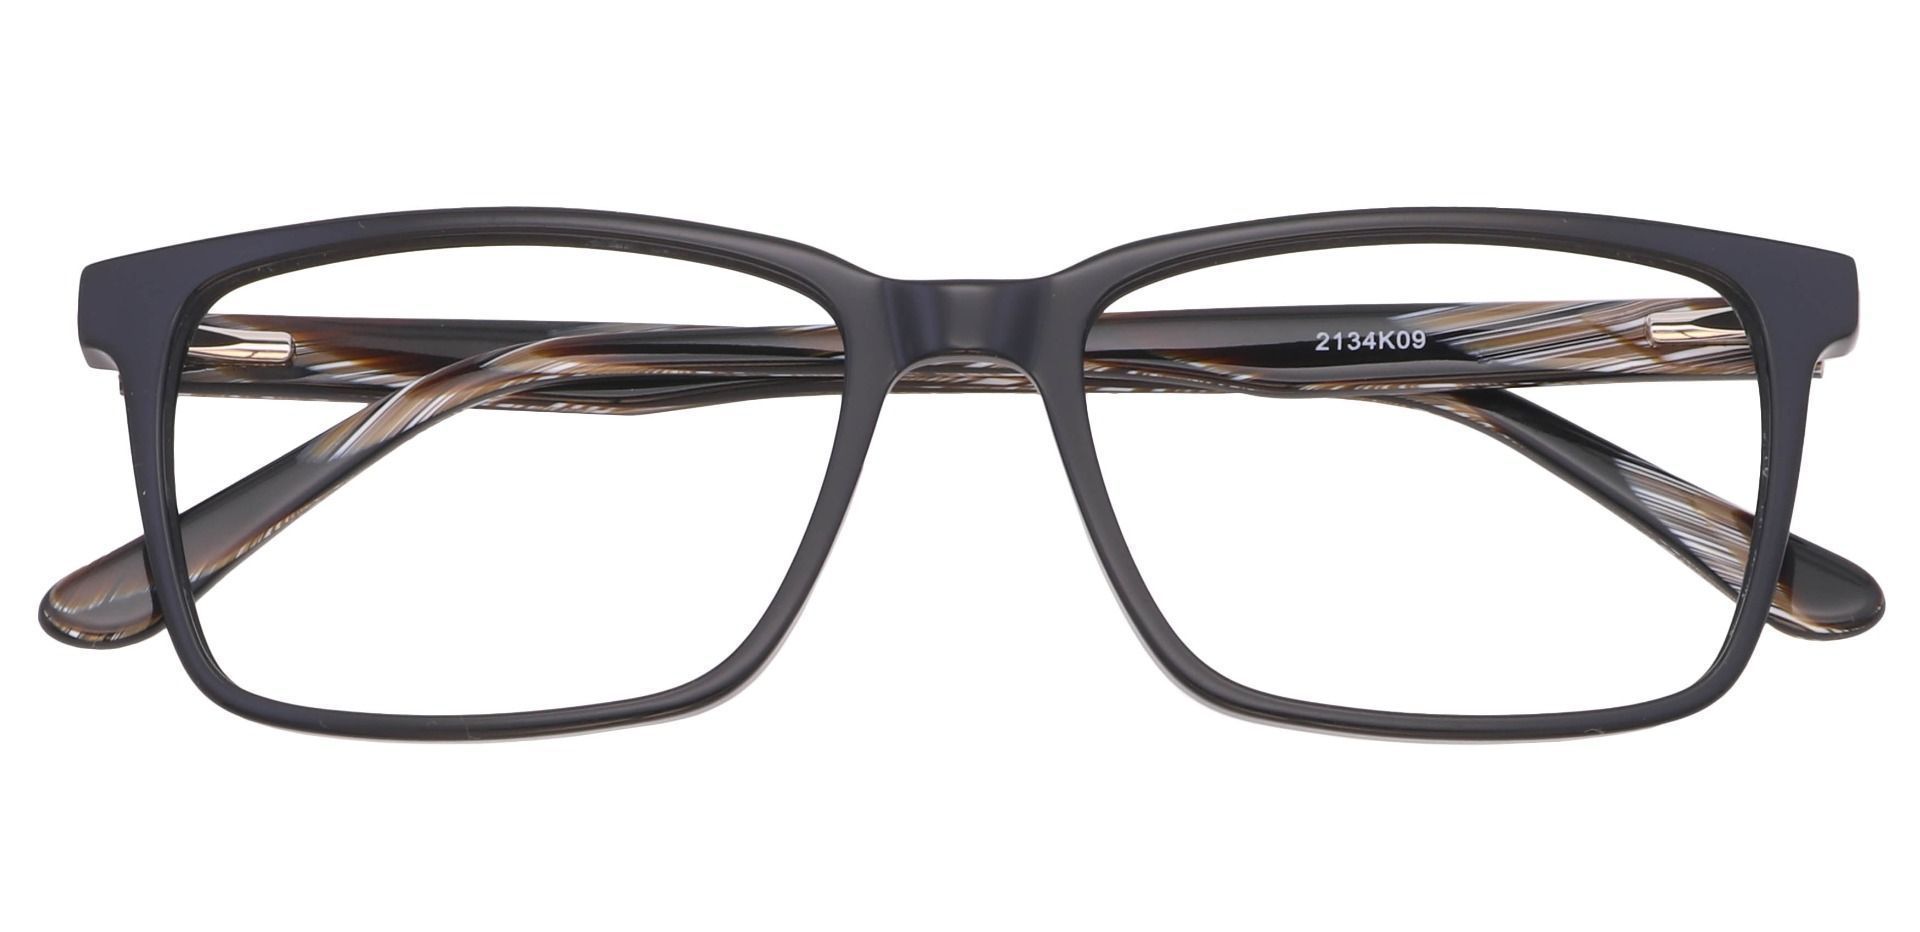 Venice Rectangle Eyeglasses Frame - Black